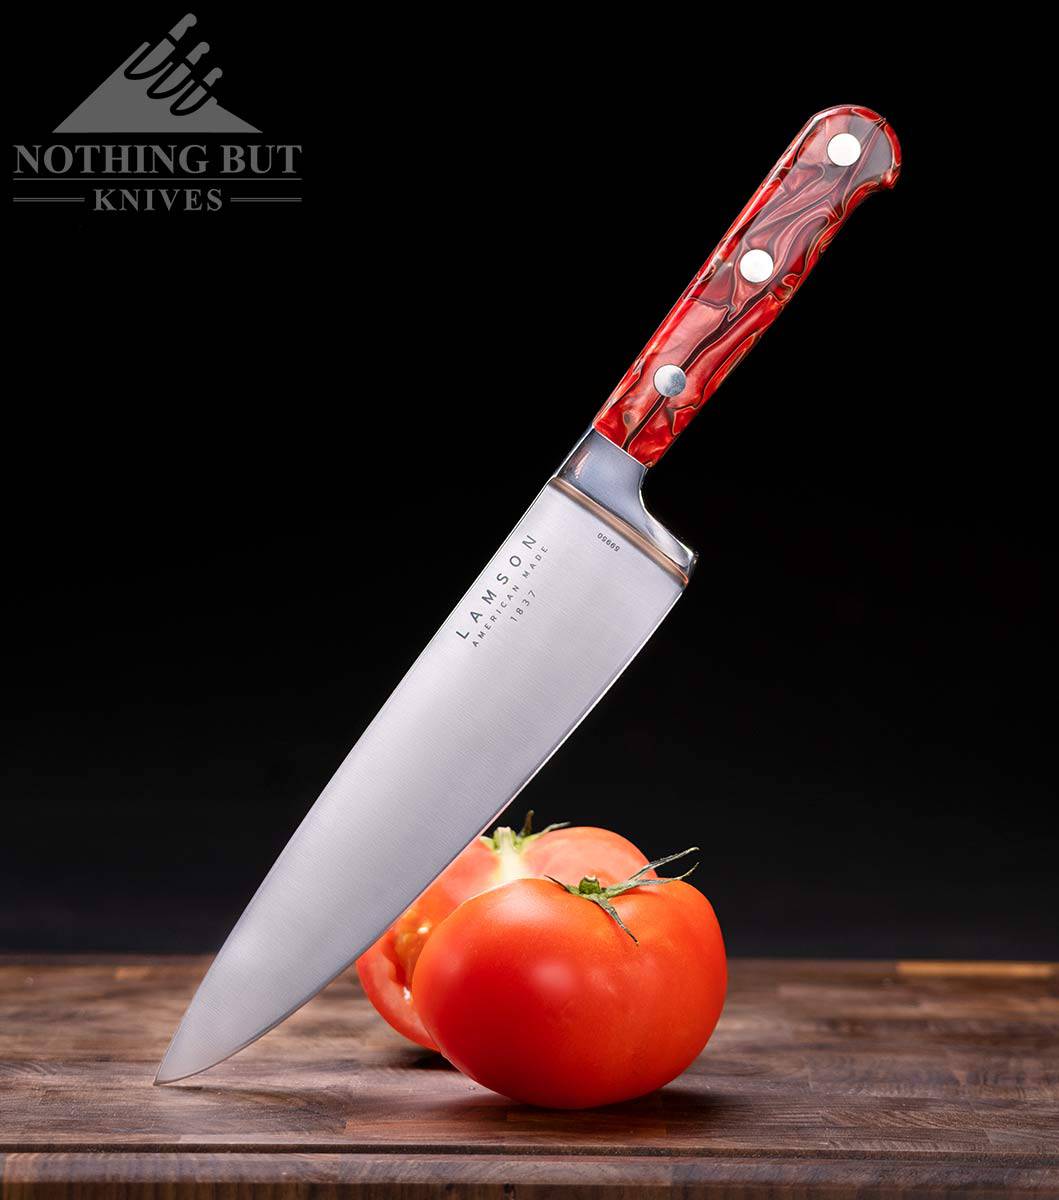 https://www.nothingbutknives.com/wp-content/uploads/2021/09/Lamson-Premier-Chef-Knife-Review.jpg